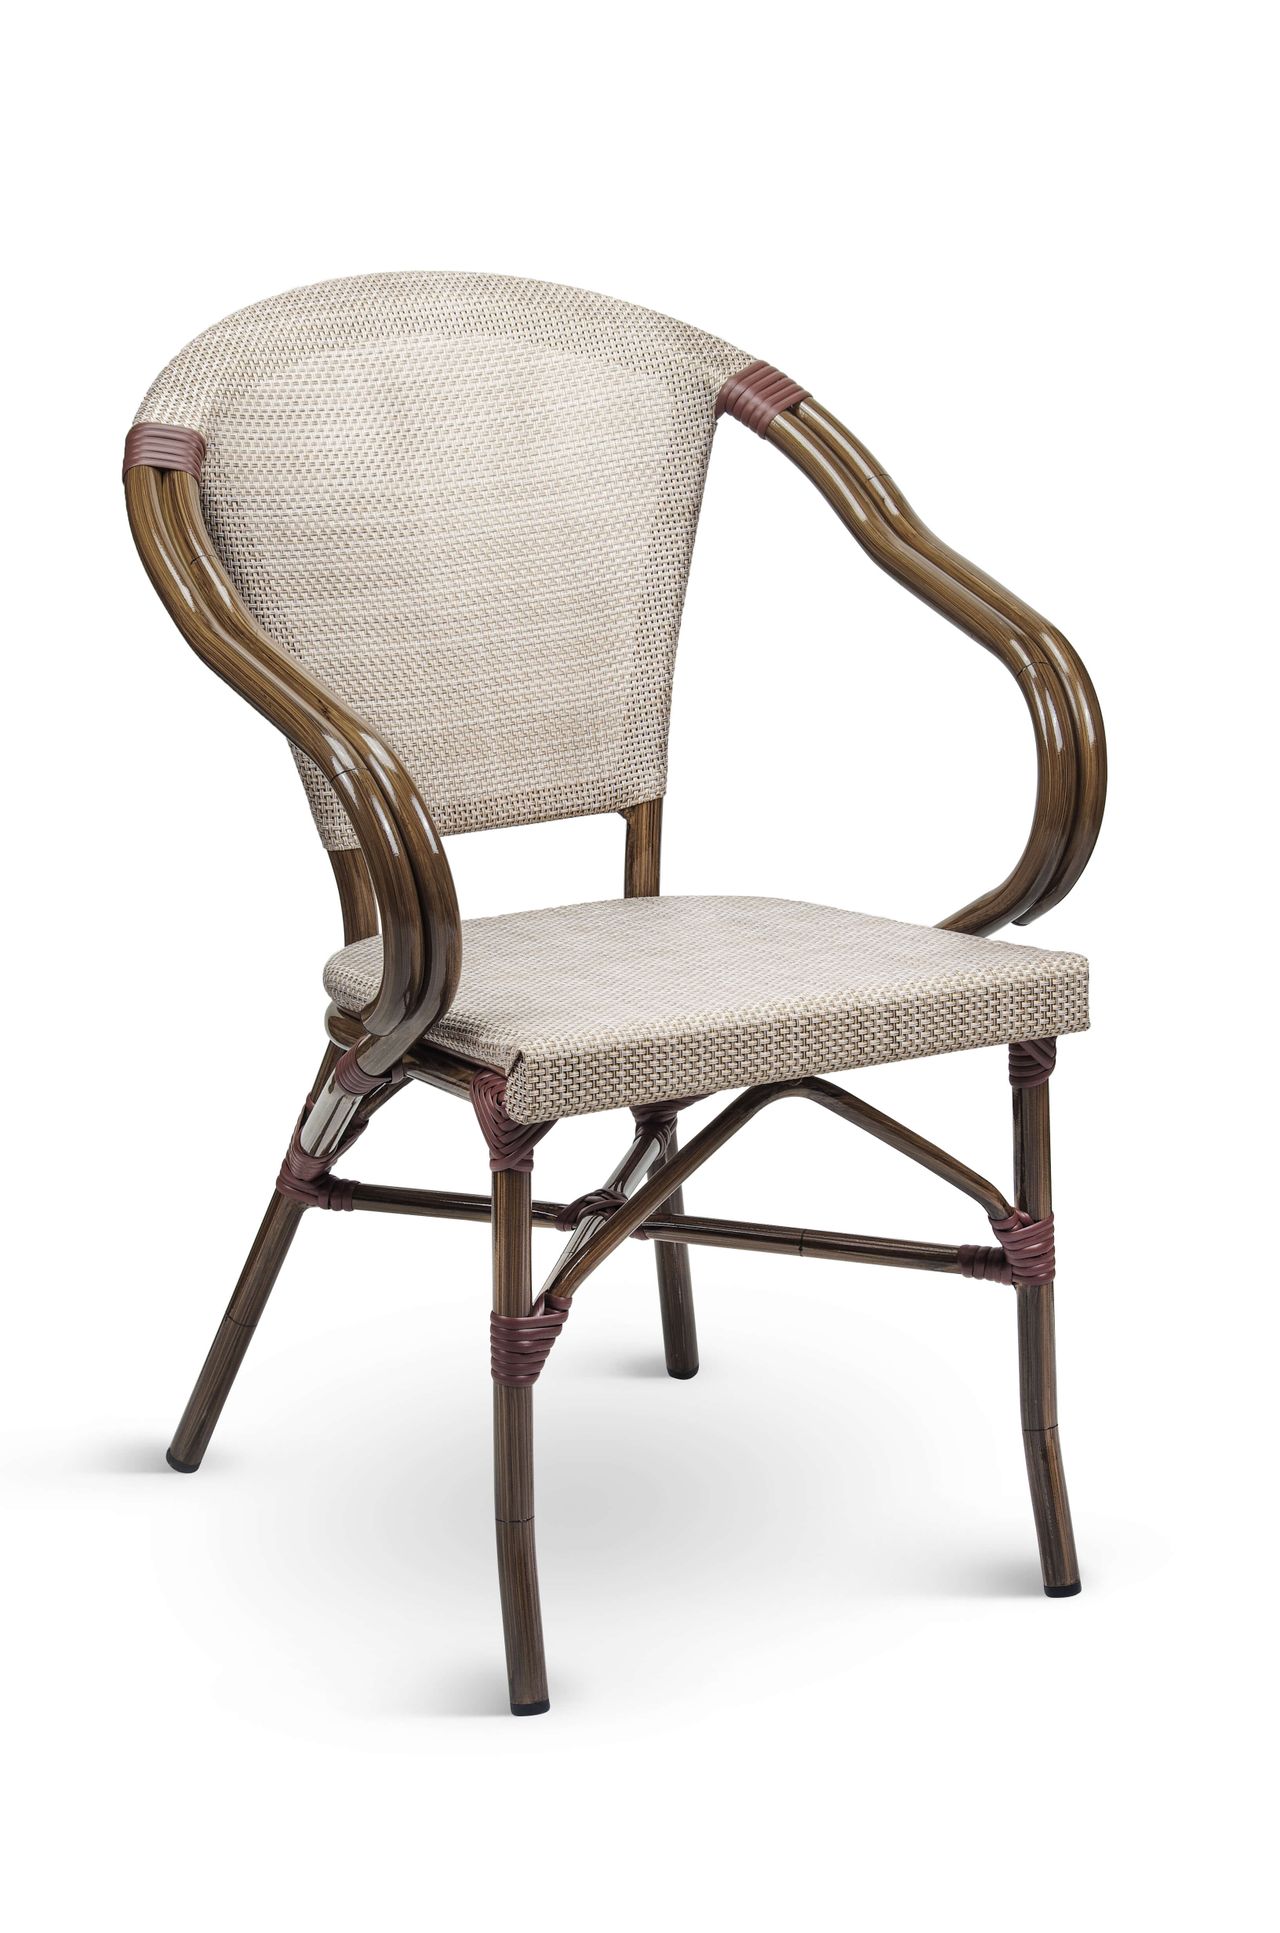 DL STAR C Natúr design, vintage Tessil betétes kültéri szék